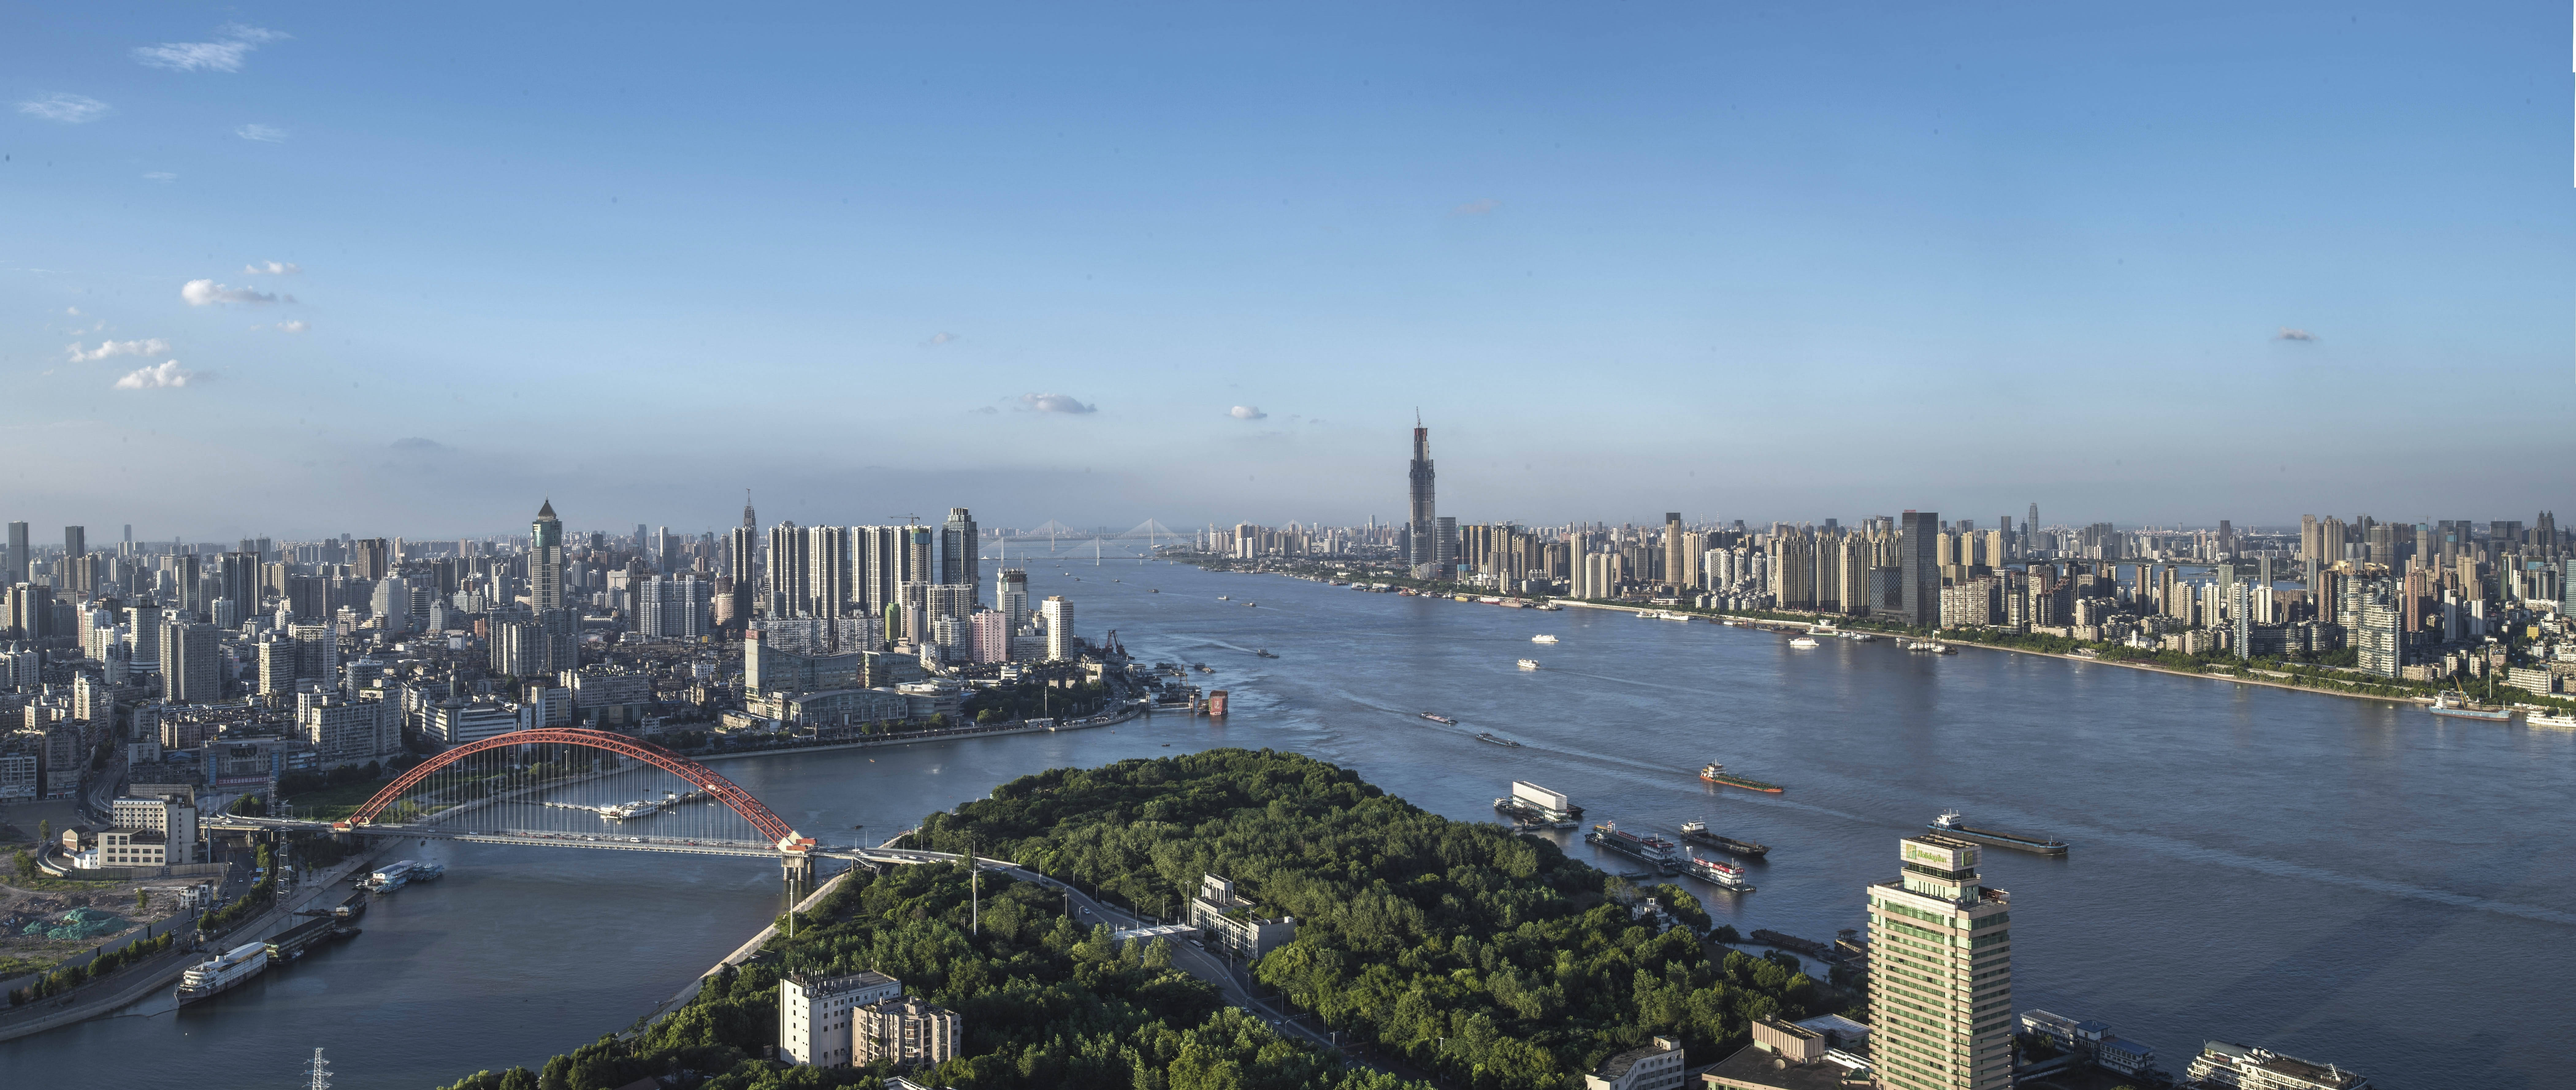 俯瞰长江和汉江交汇处的湖北武汉汉口龙王庙江段(拼接照片,2017年7月